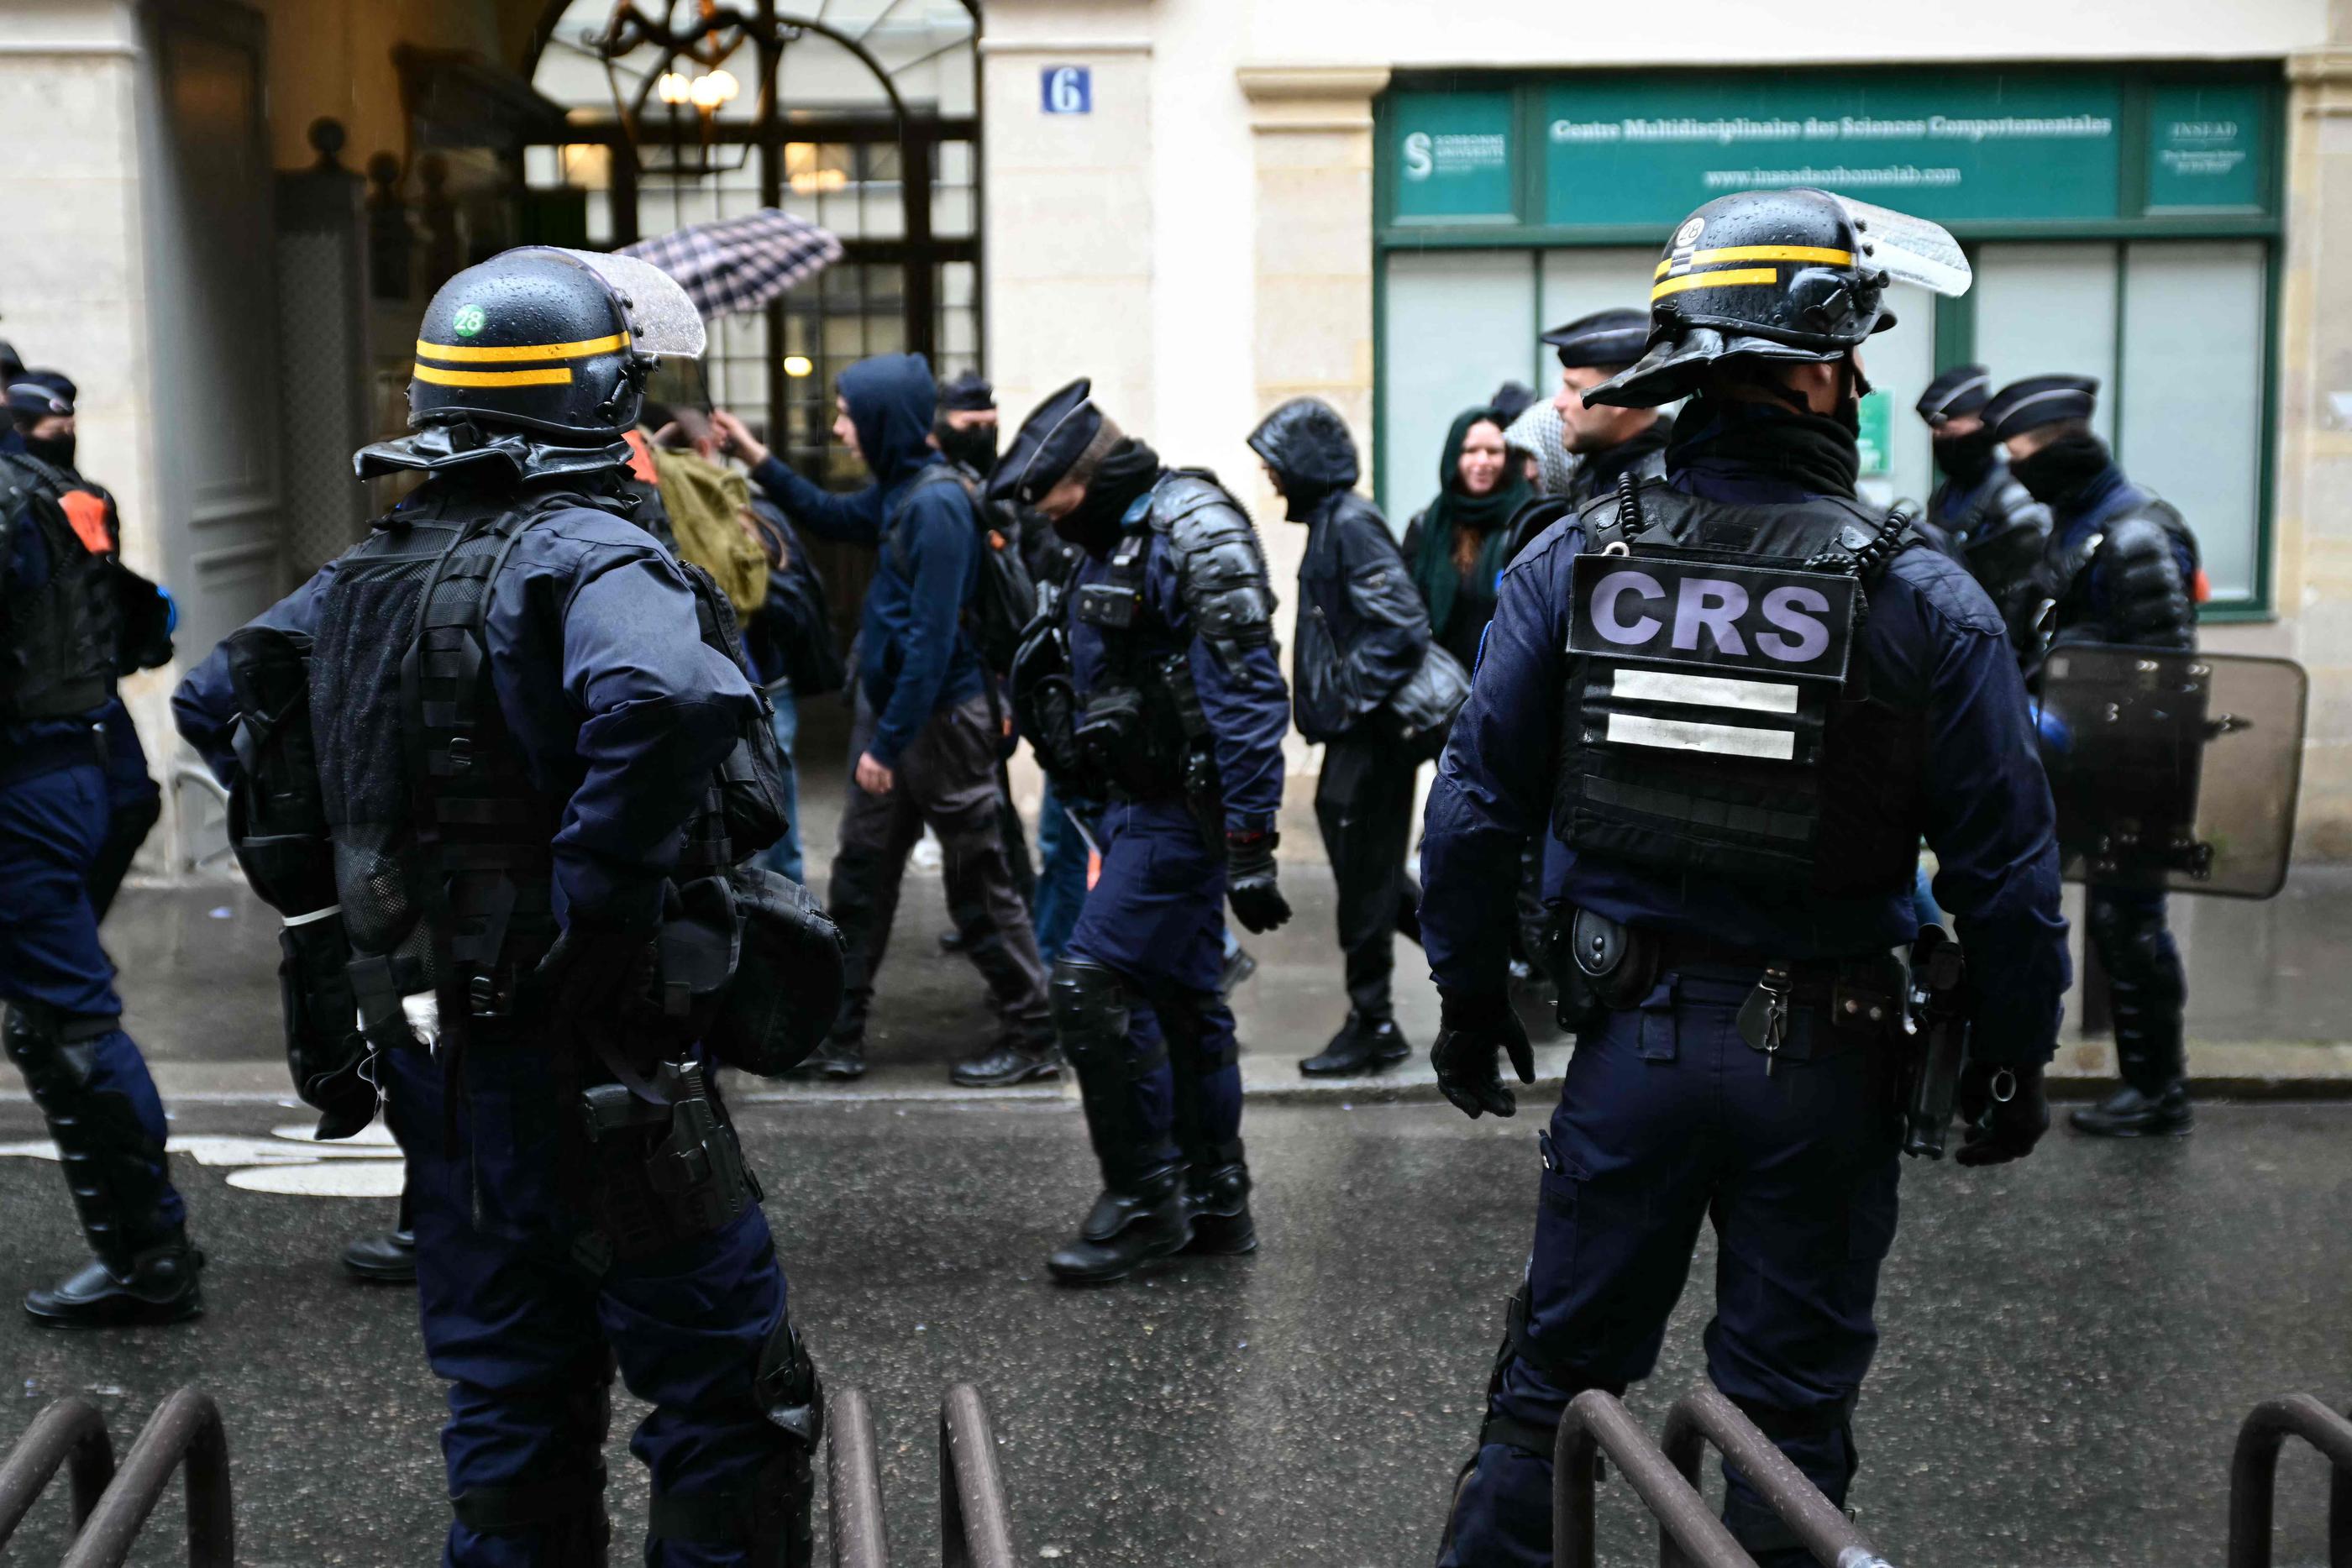 En écho à la mobilisation sur des campus américains, plusieurs actions propalestiniennes ont lieu depuis quelques semaines en France, comme ici à la Sorbonne. (Illustration) AFP/Miguel Medina